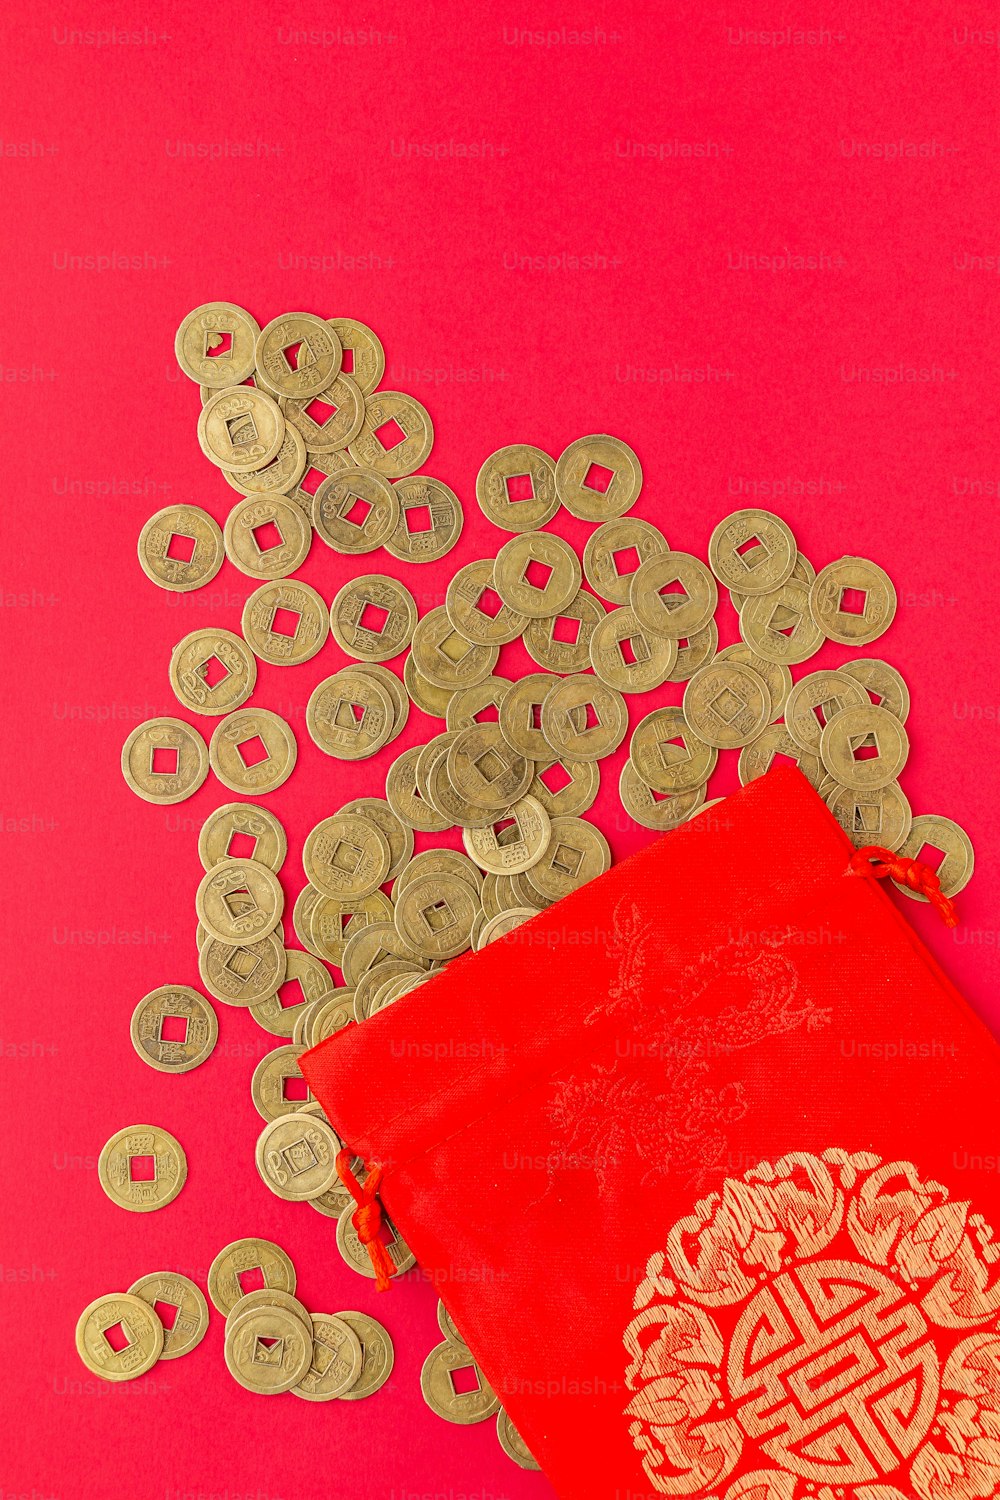 Ein rotes Buch, umgeben von Goldmünzen auf rosa Hintergrund